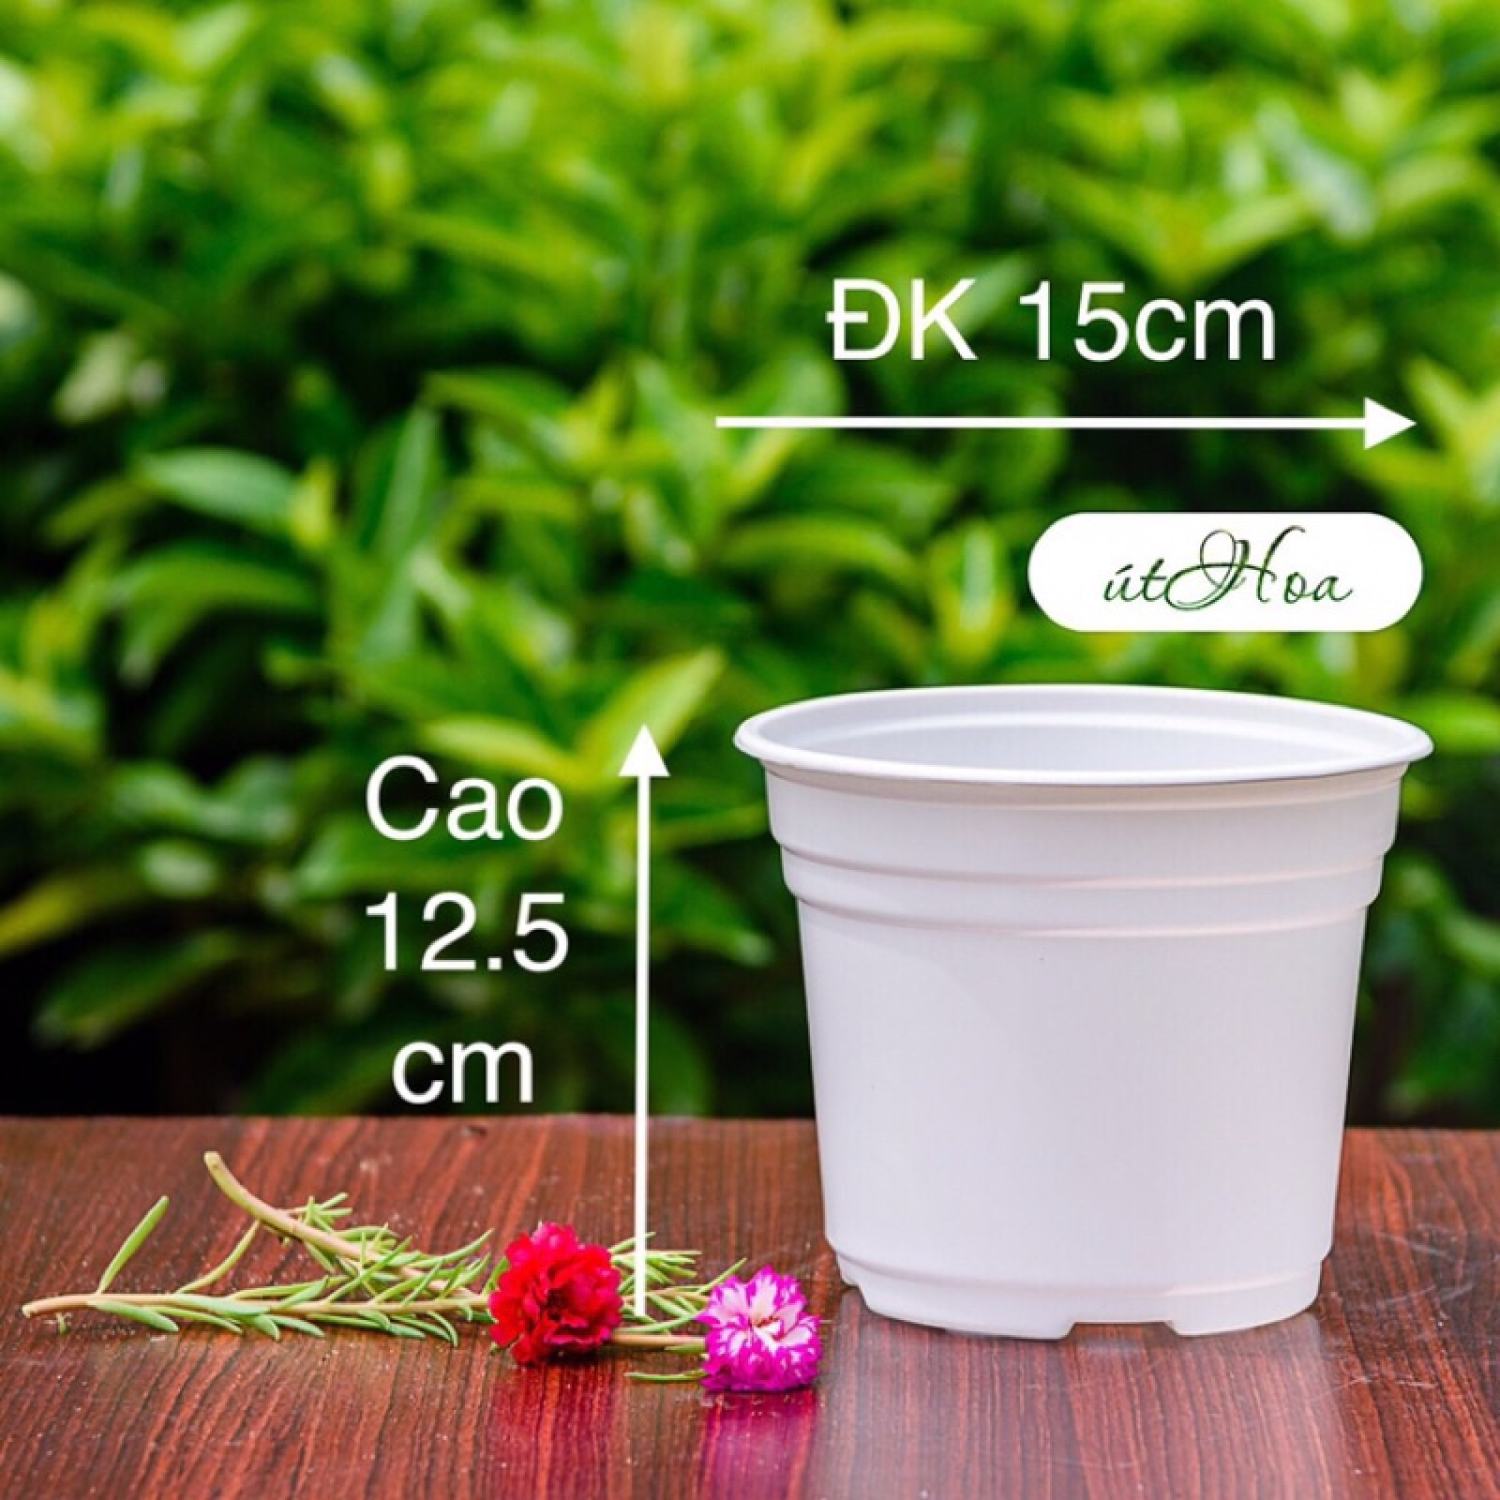 [Sỉ từ 20 cái] Chậu nhựa trắng T15 (15x12.5 cm) trồng cây, trồng hoa nhựa cao cấp